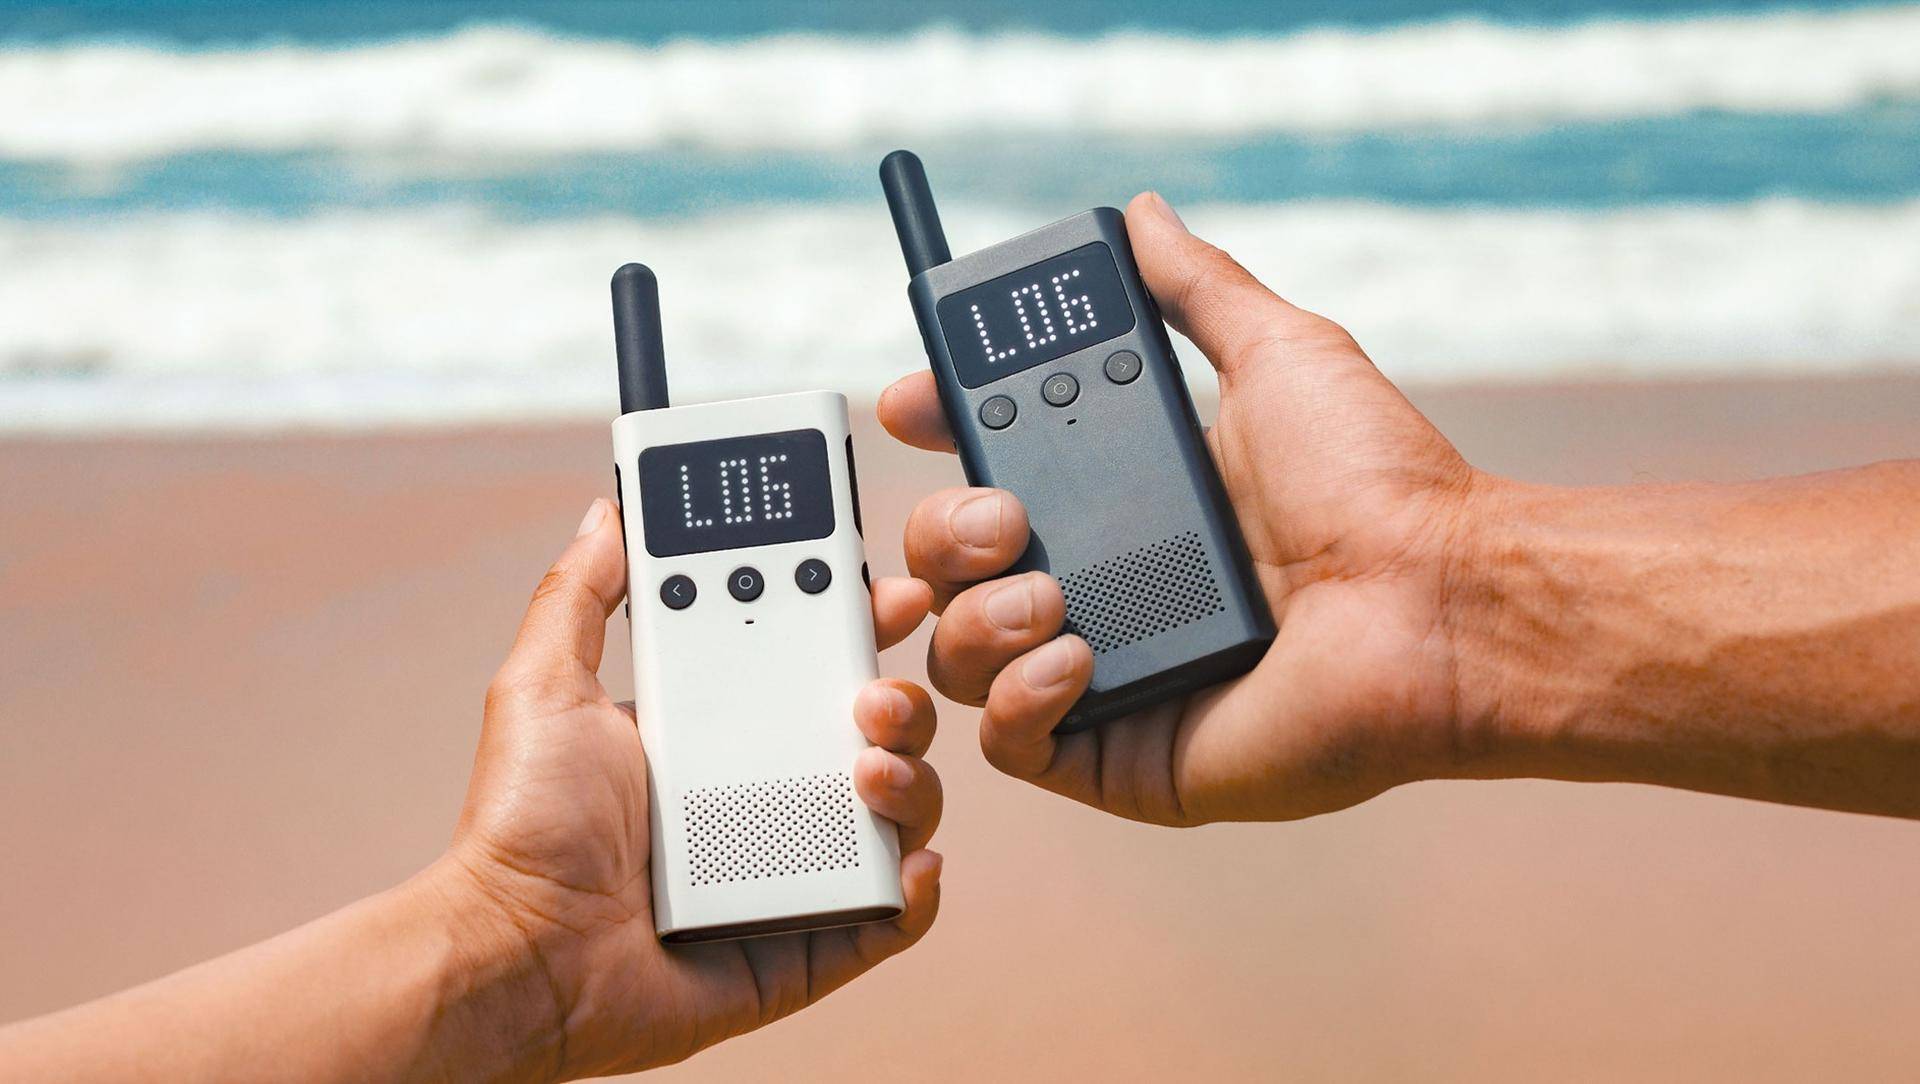 小米手机全新升级小米米家无线对讲机1S发布，市场价249元，轻巧便携式成较大 话题